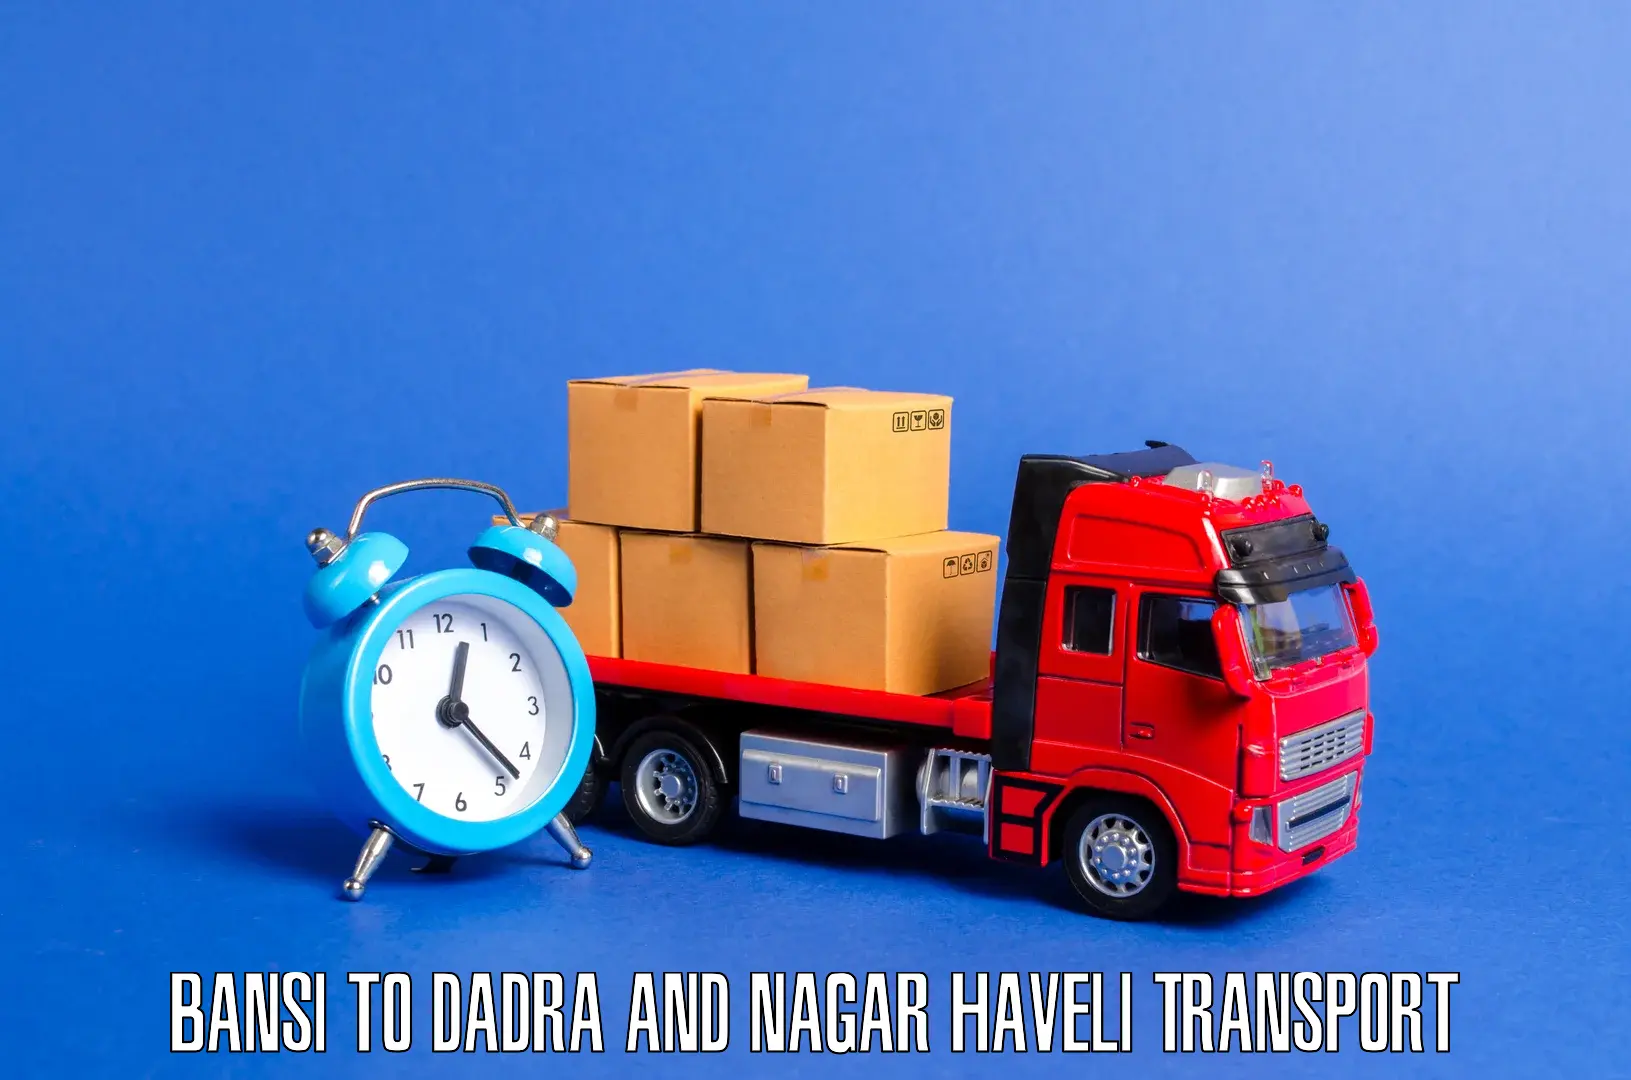 Land transport services Bansi to Dadra and Nagar Haveli